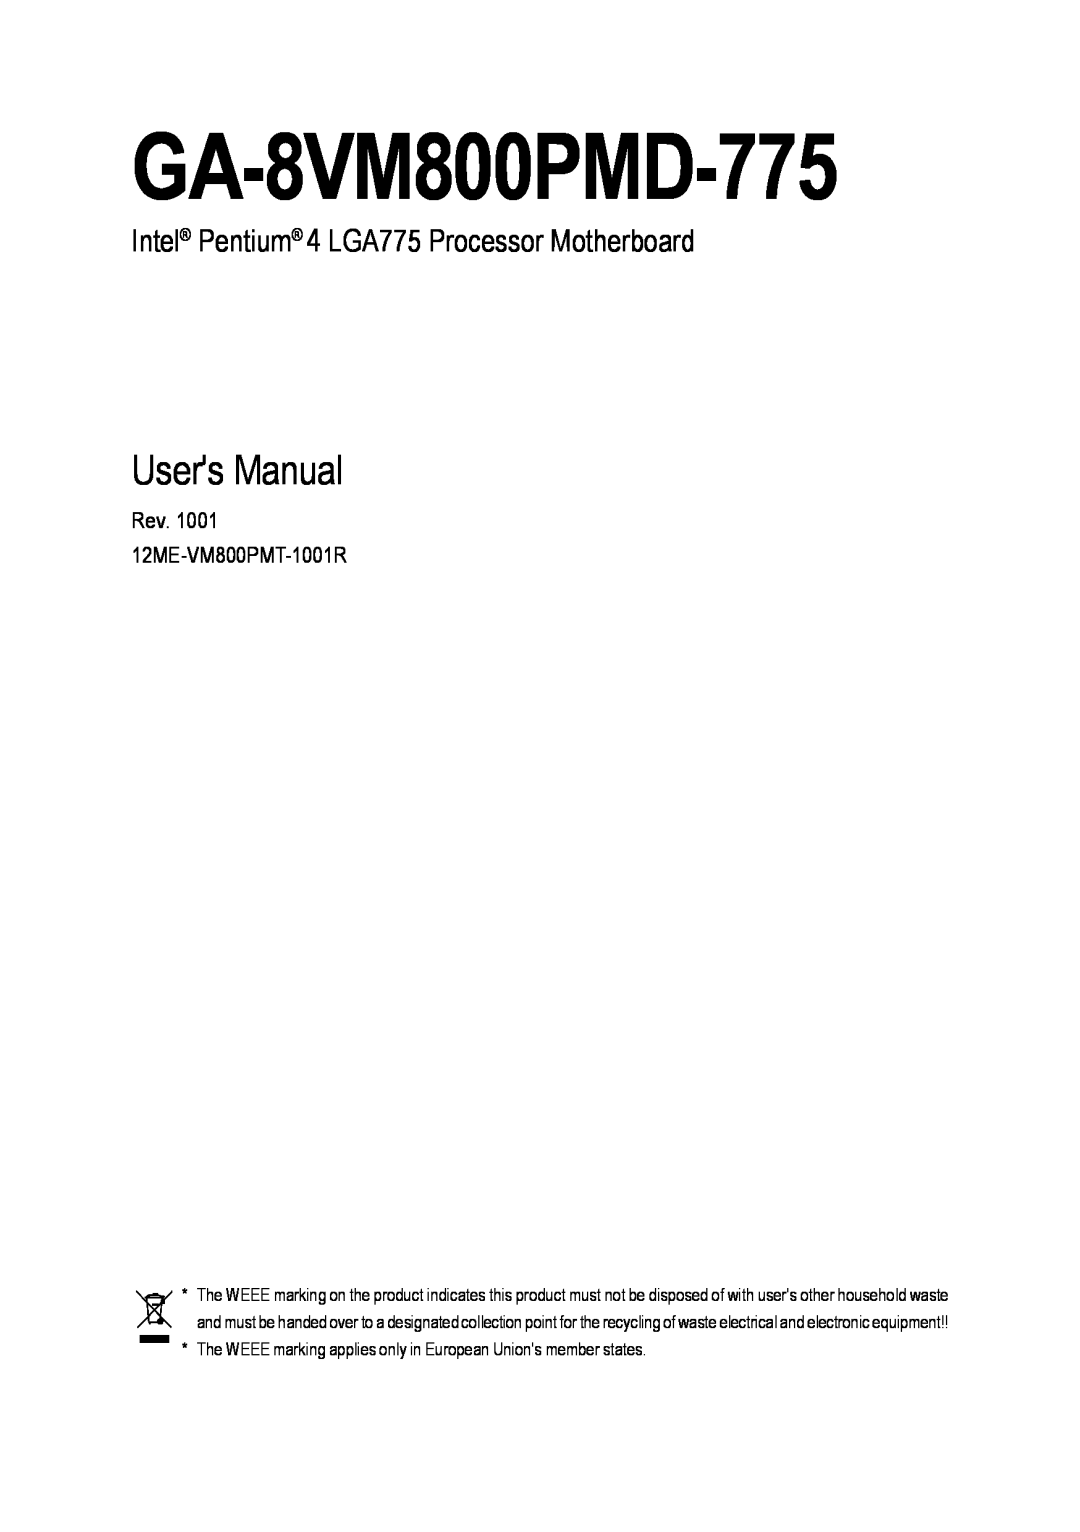 Intel GA-8VM800PMD-775 user manual Users Manual, Intel Pentium 4 LGA775 Processor Motherboard 